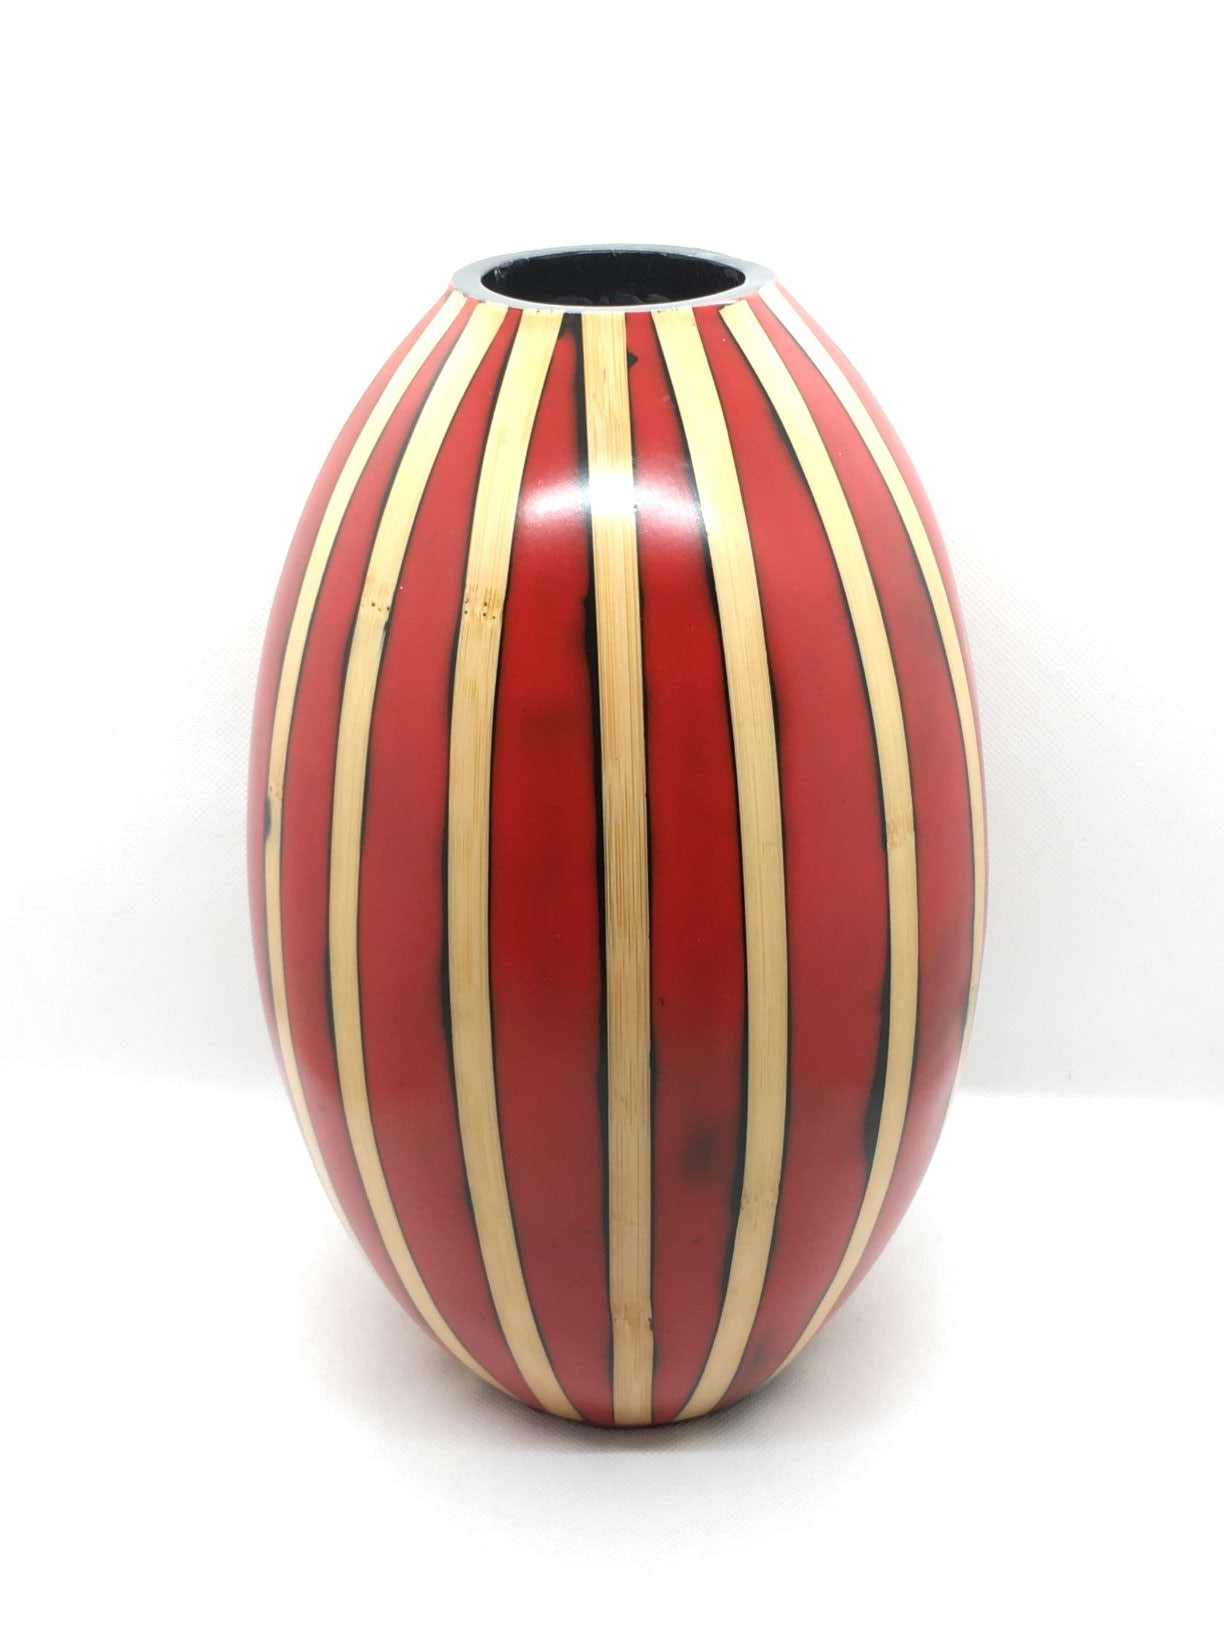 Vaso portafiori in resina decorato a strisce effetto legno. Dimensioni: cm 16 x 28 h. In negozio e online su tuttochic.it